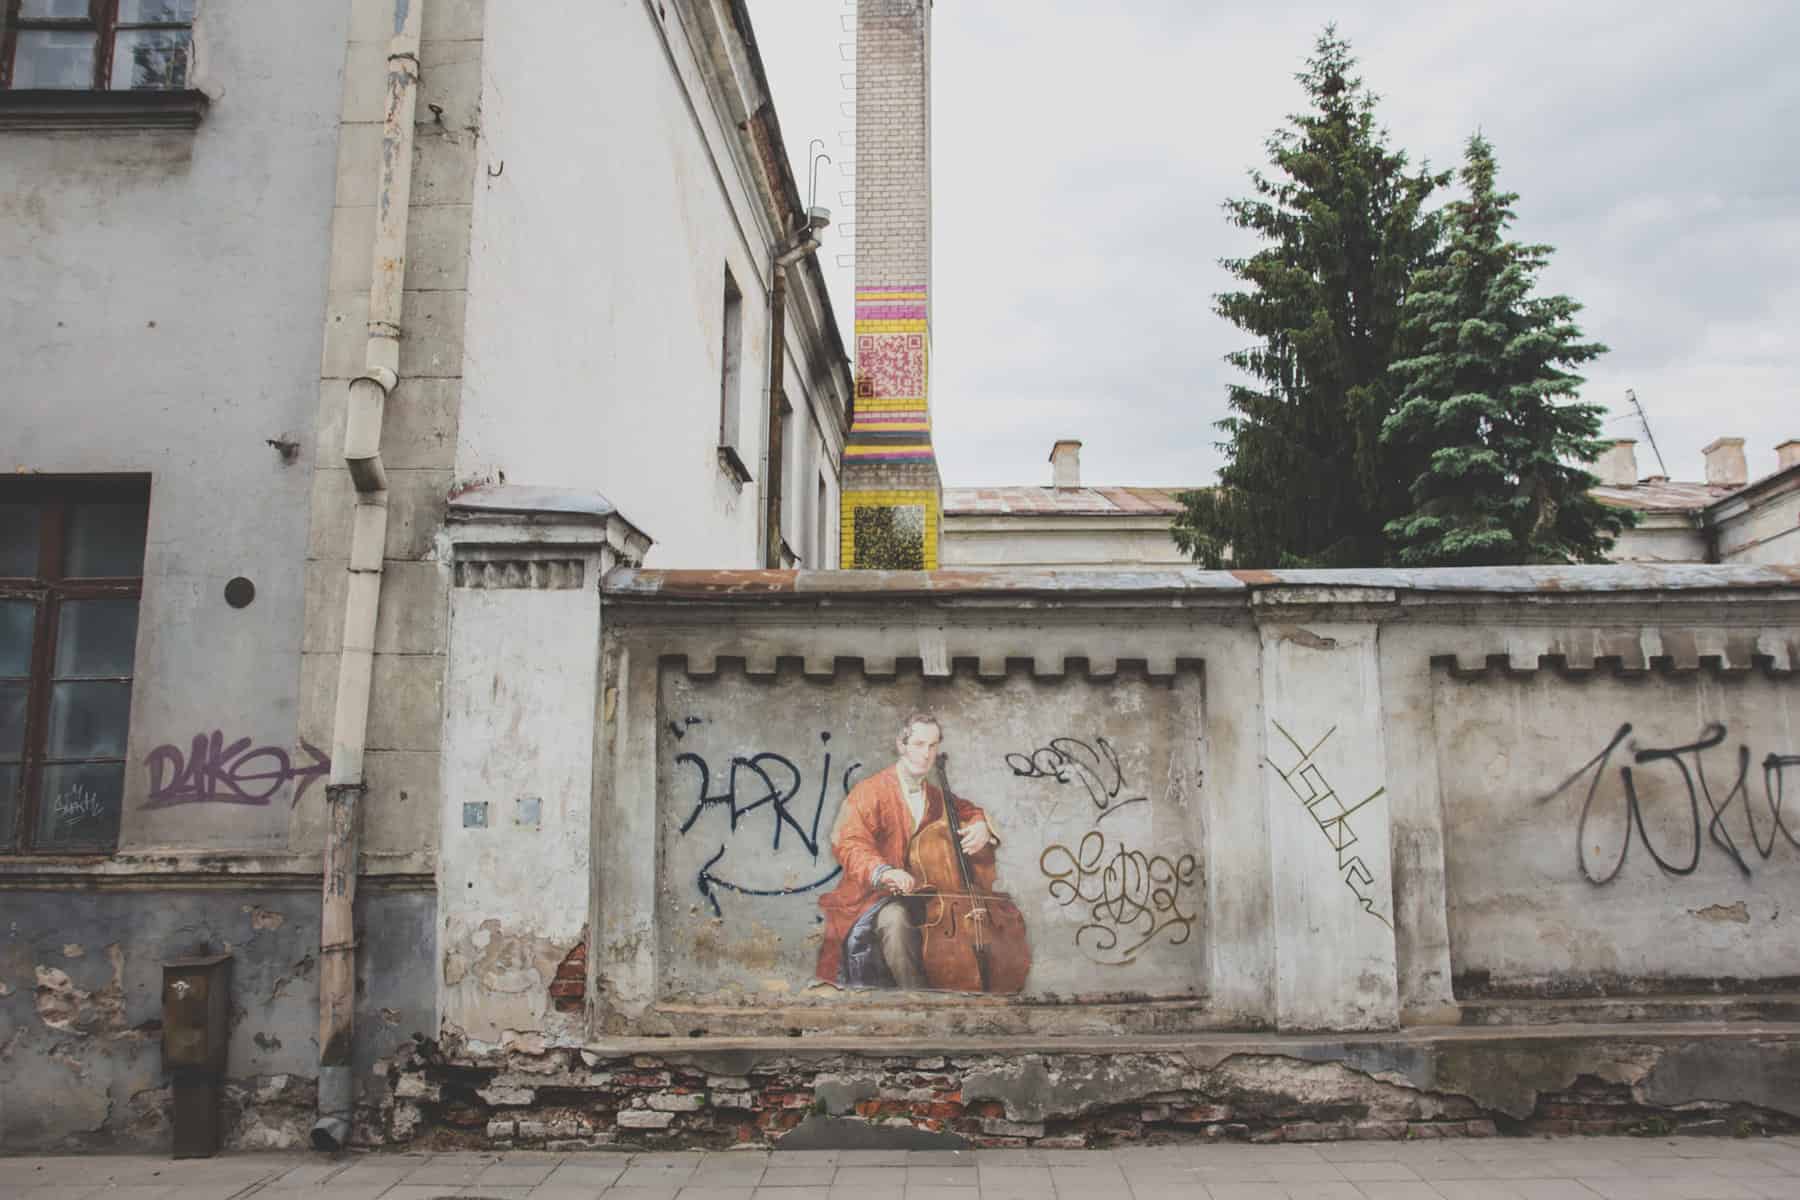 Mann spielt Cello, gemalt zwischen Graffiti